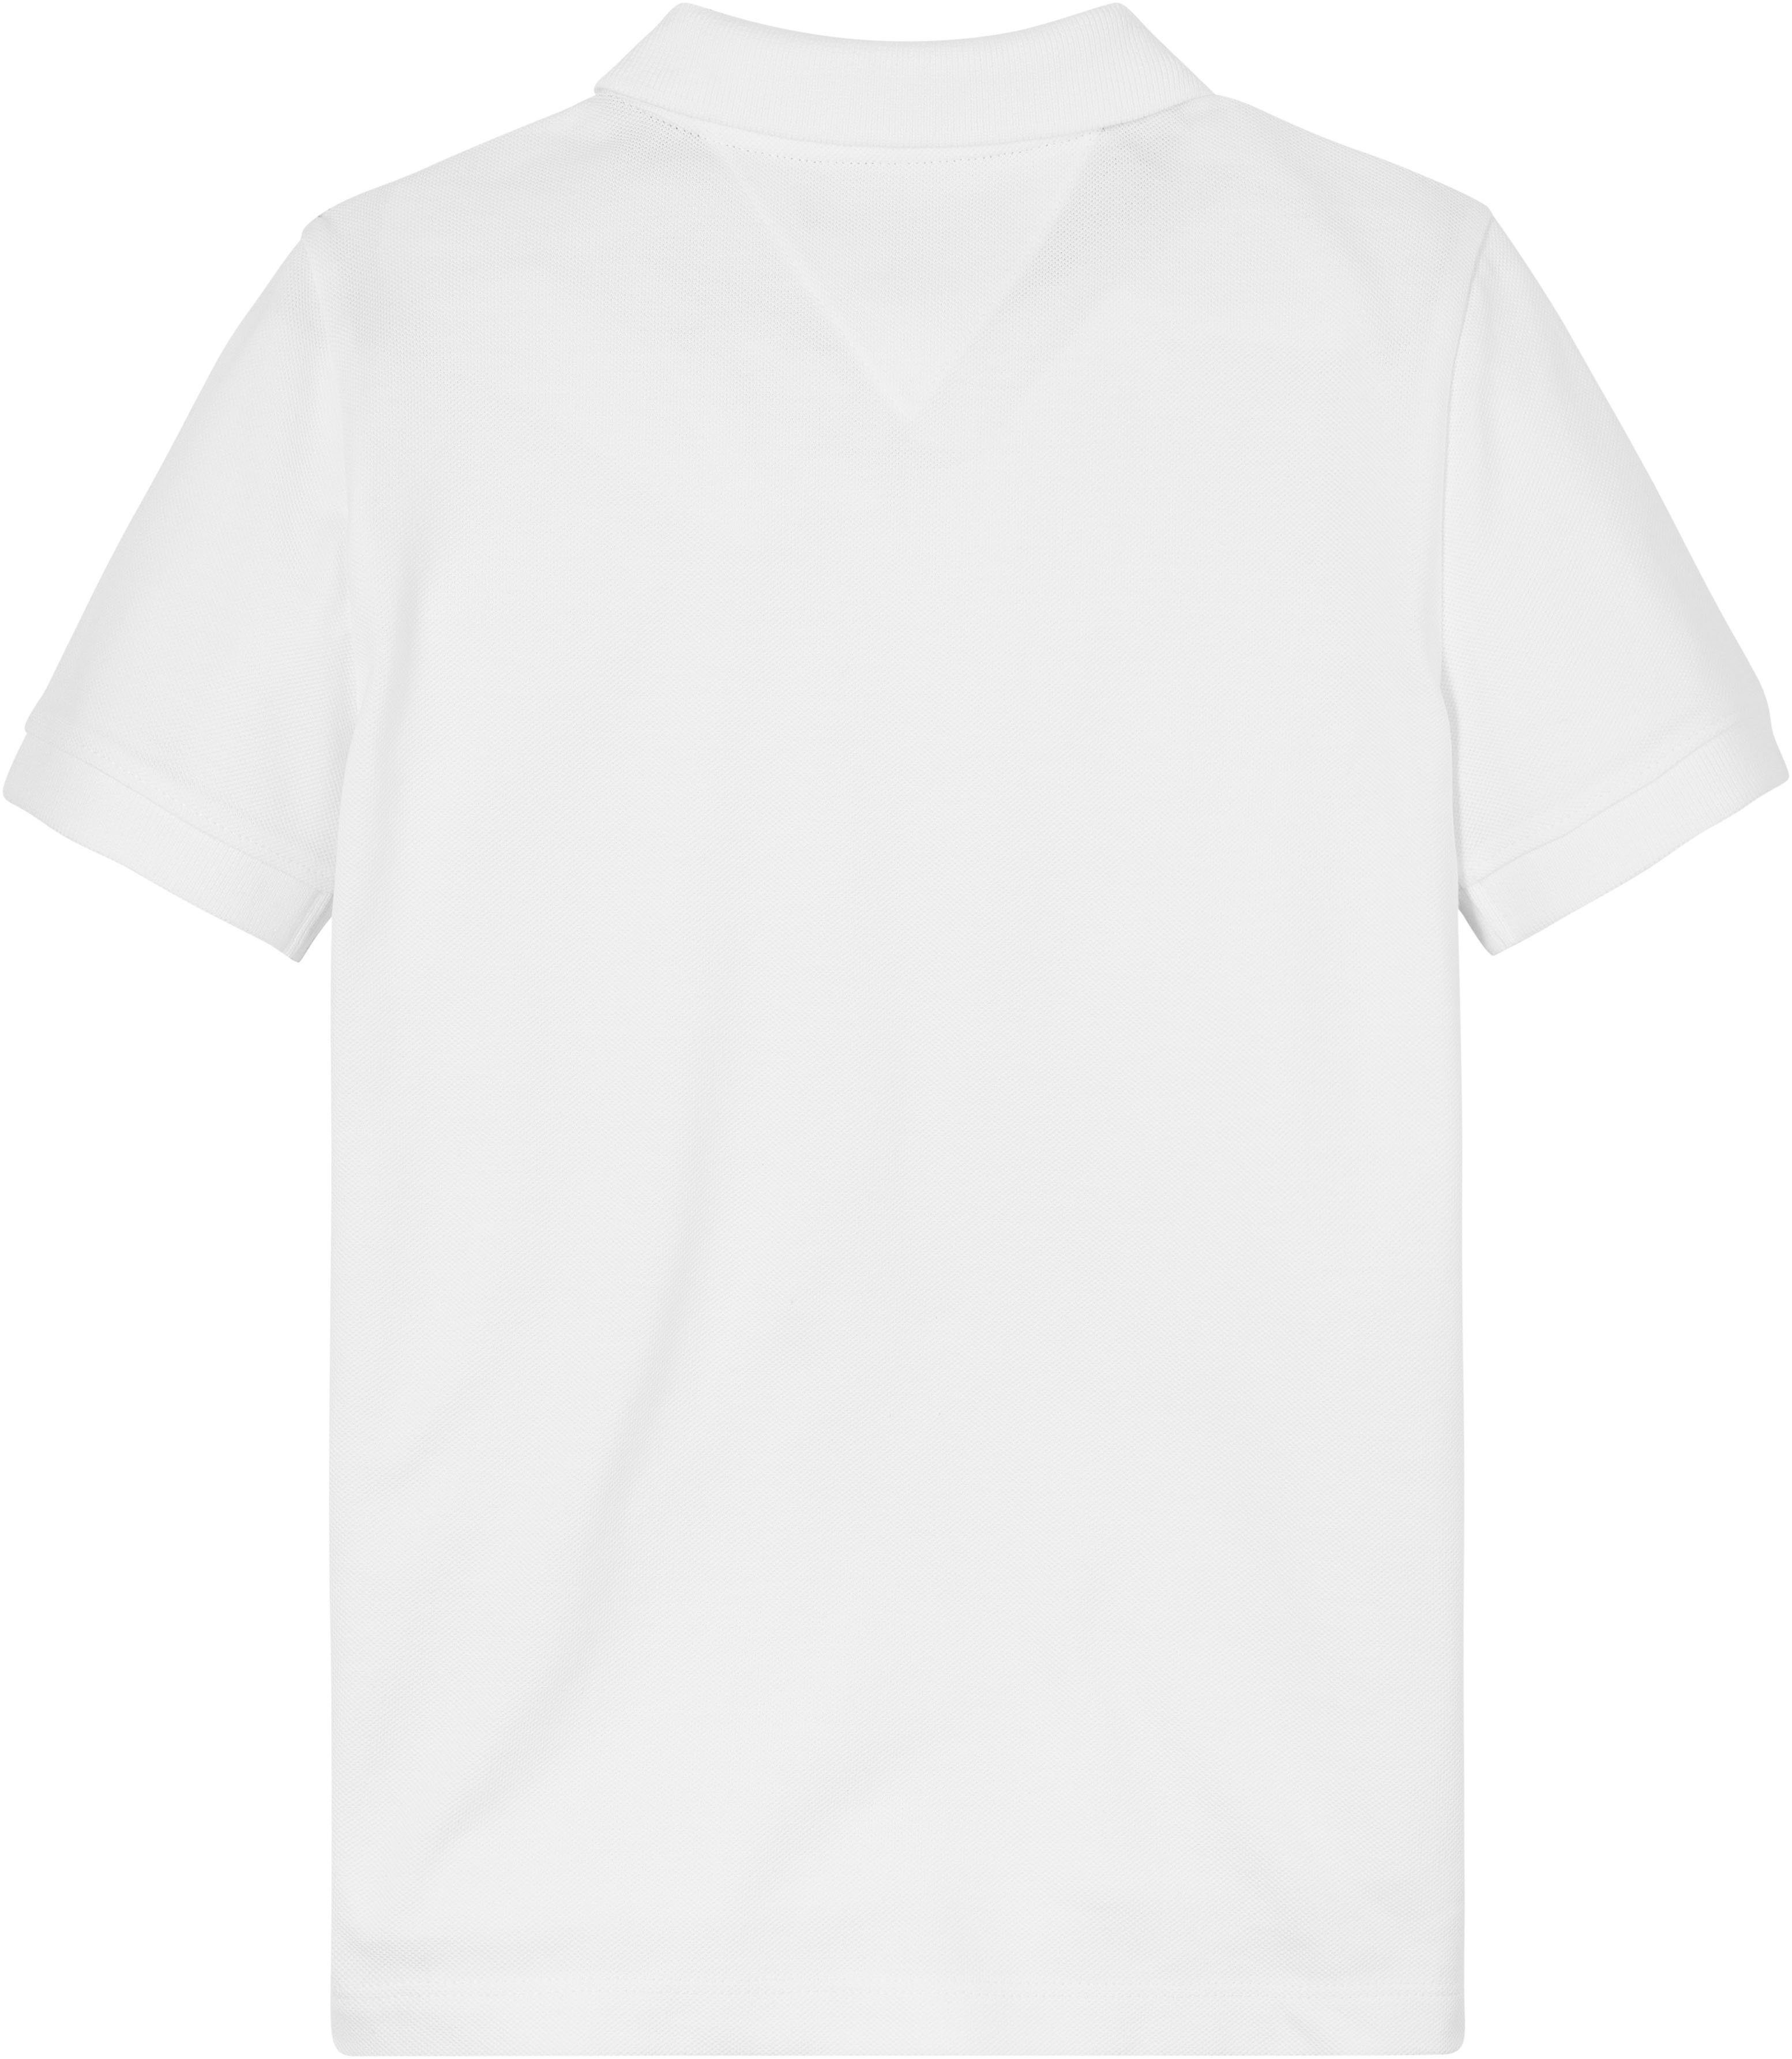 Tommy Hilfiger Poloshirt S/S POLO white LOGO TH mit Logostickerei